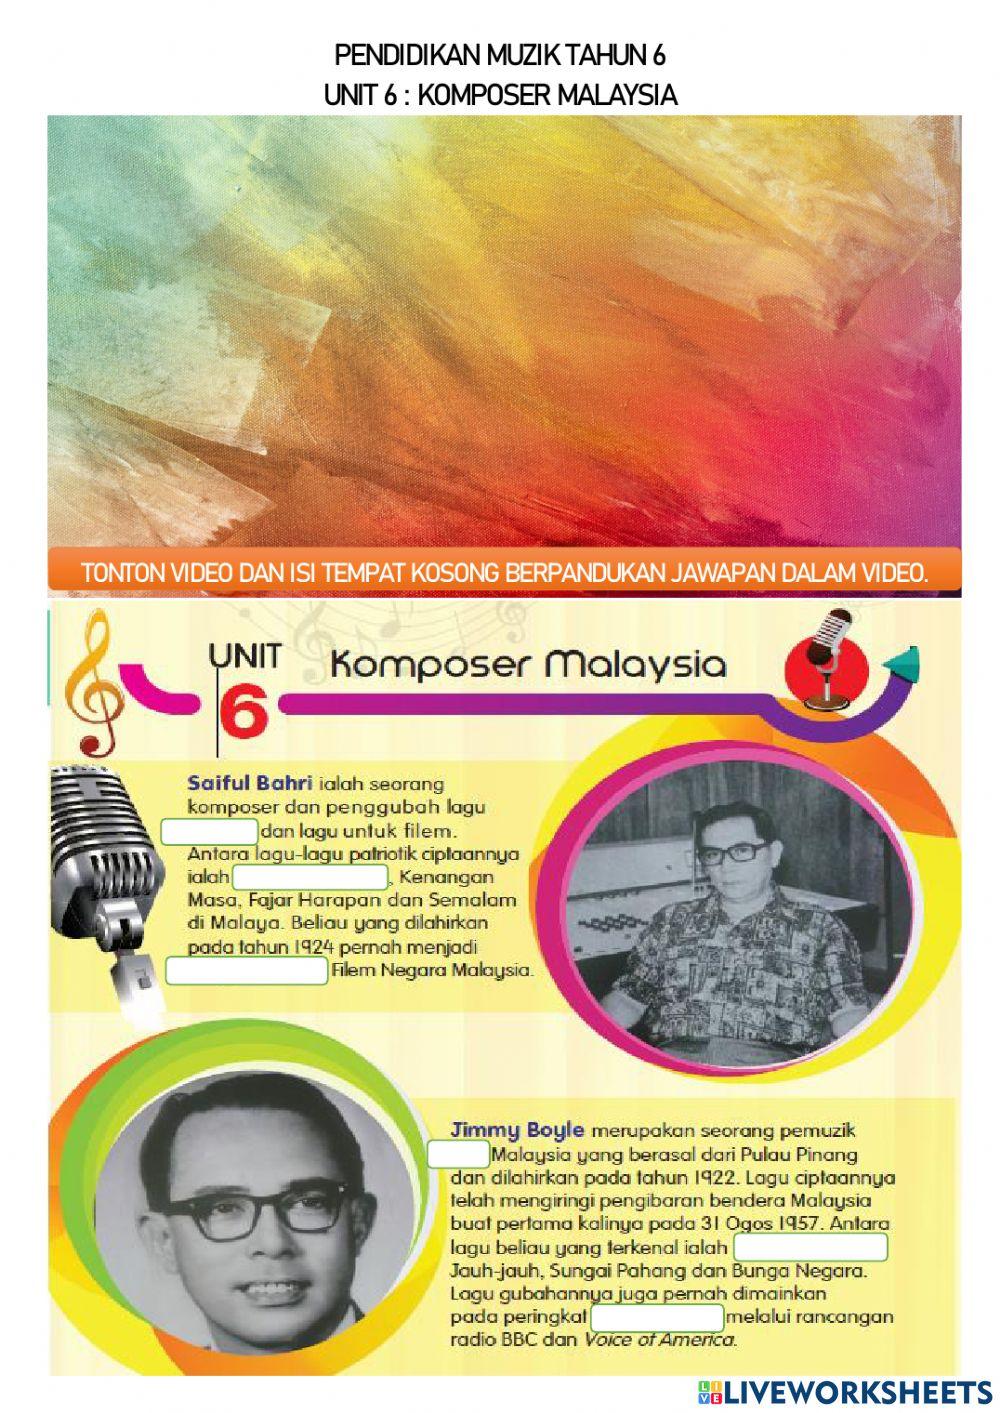 Pendidikan Muzik Tahun 6 - Komposer Malaysia